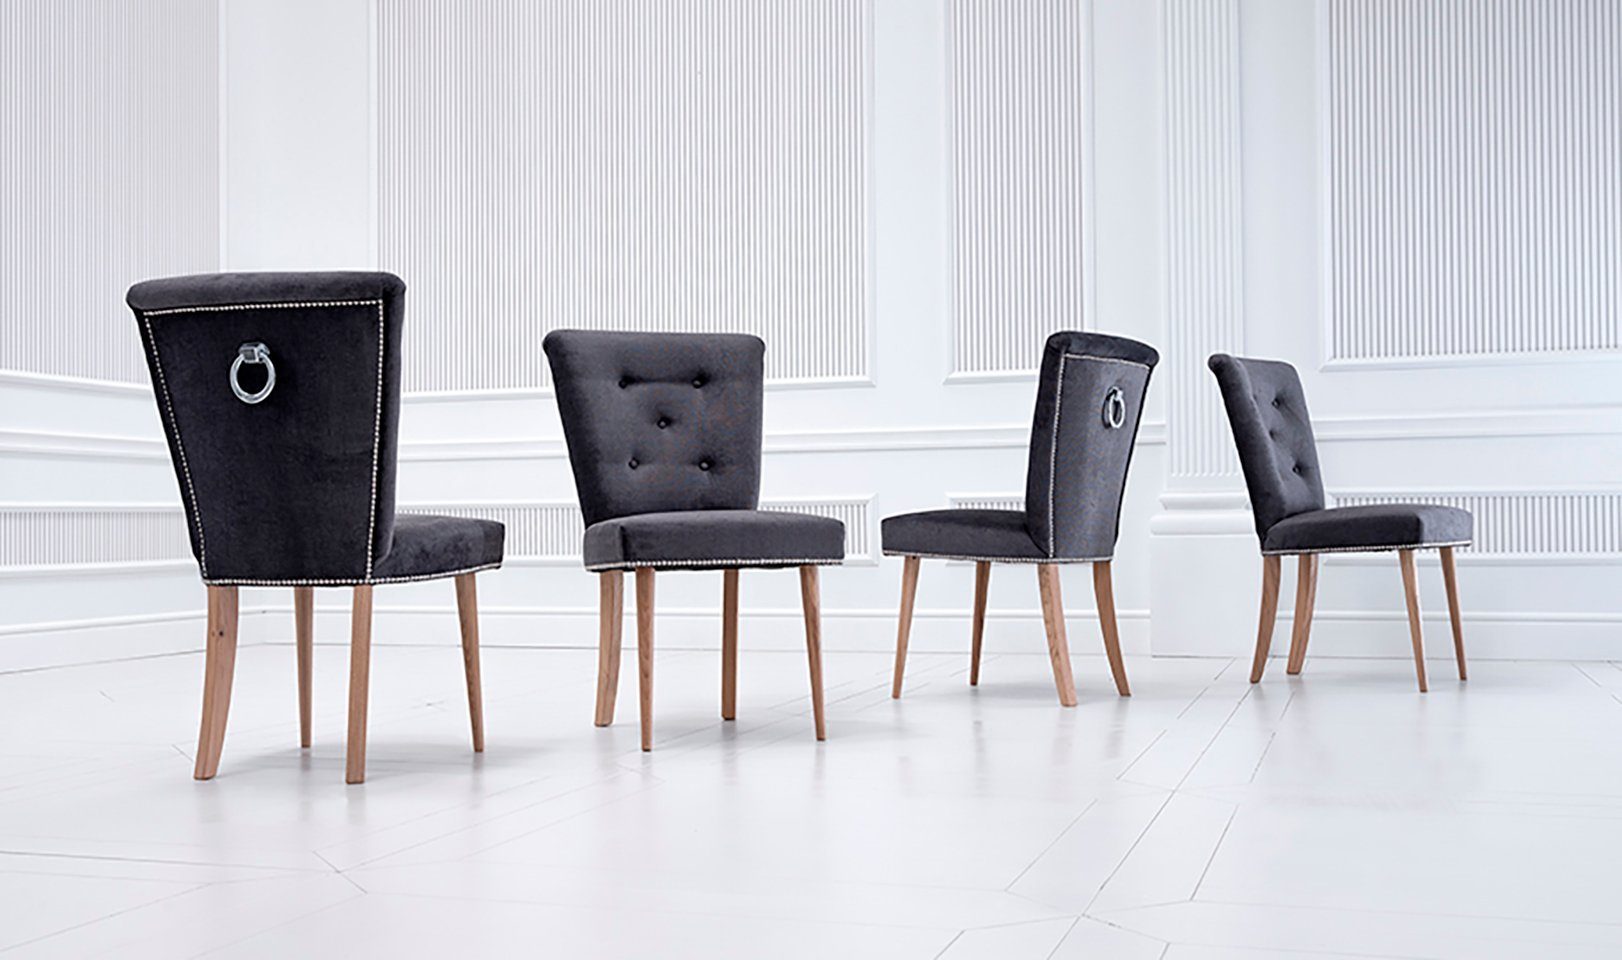 Jafra Esszimmer-Set, 10tlg. Gruppe Set Polster Stuhl Design Stühle Luxus 10x Garnitur Chesterfield